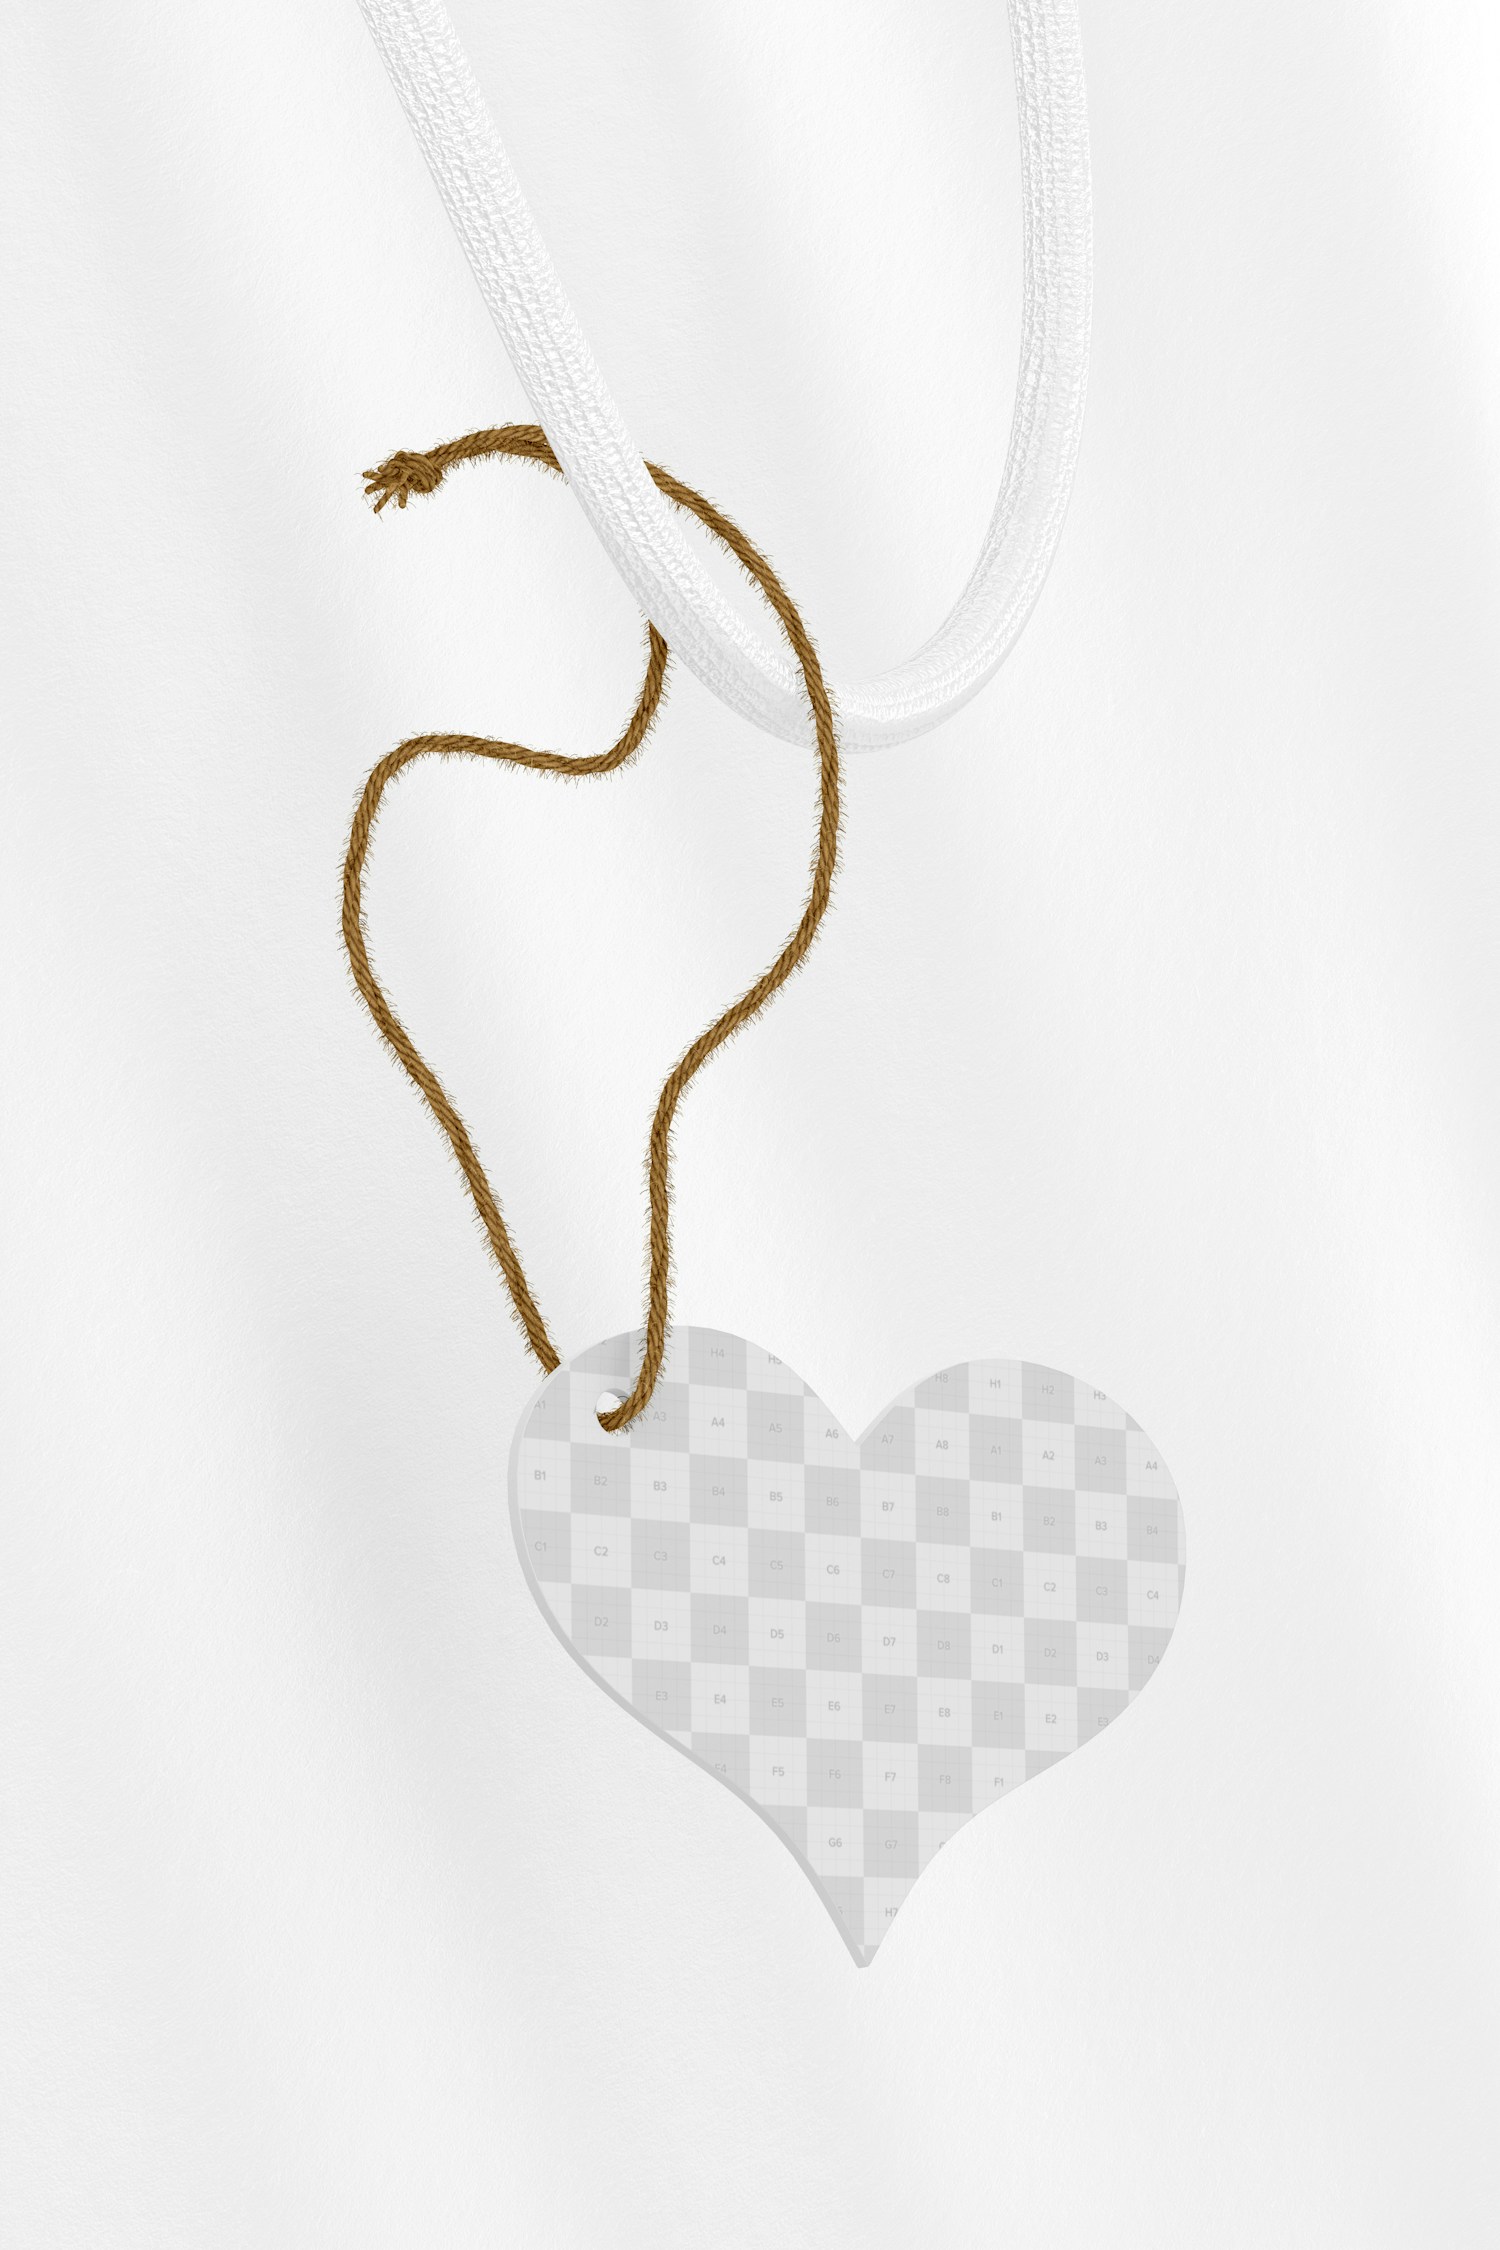 Heart Gift Tag Mockup, Hanging